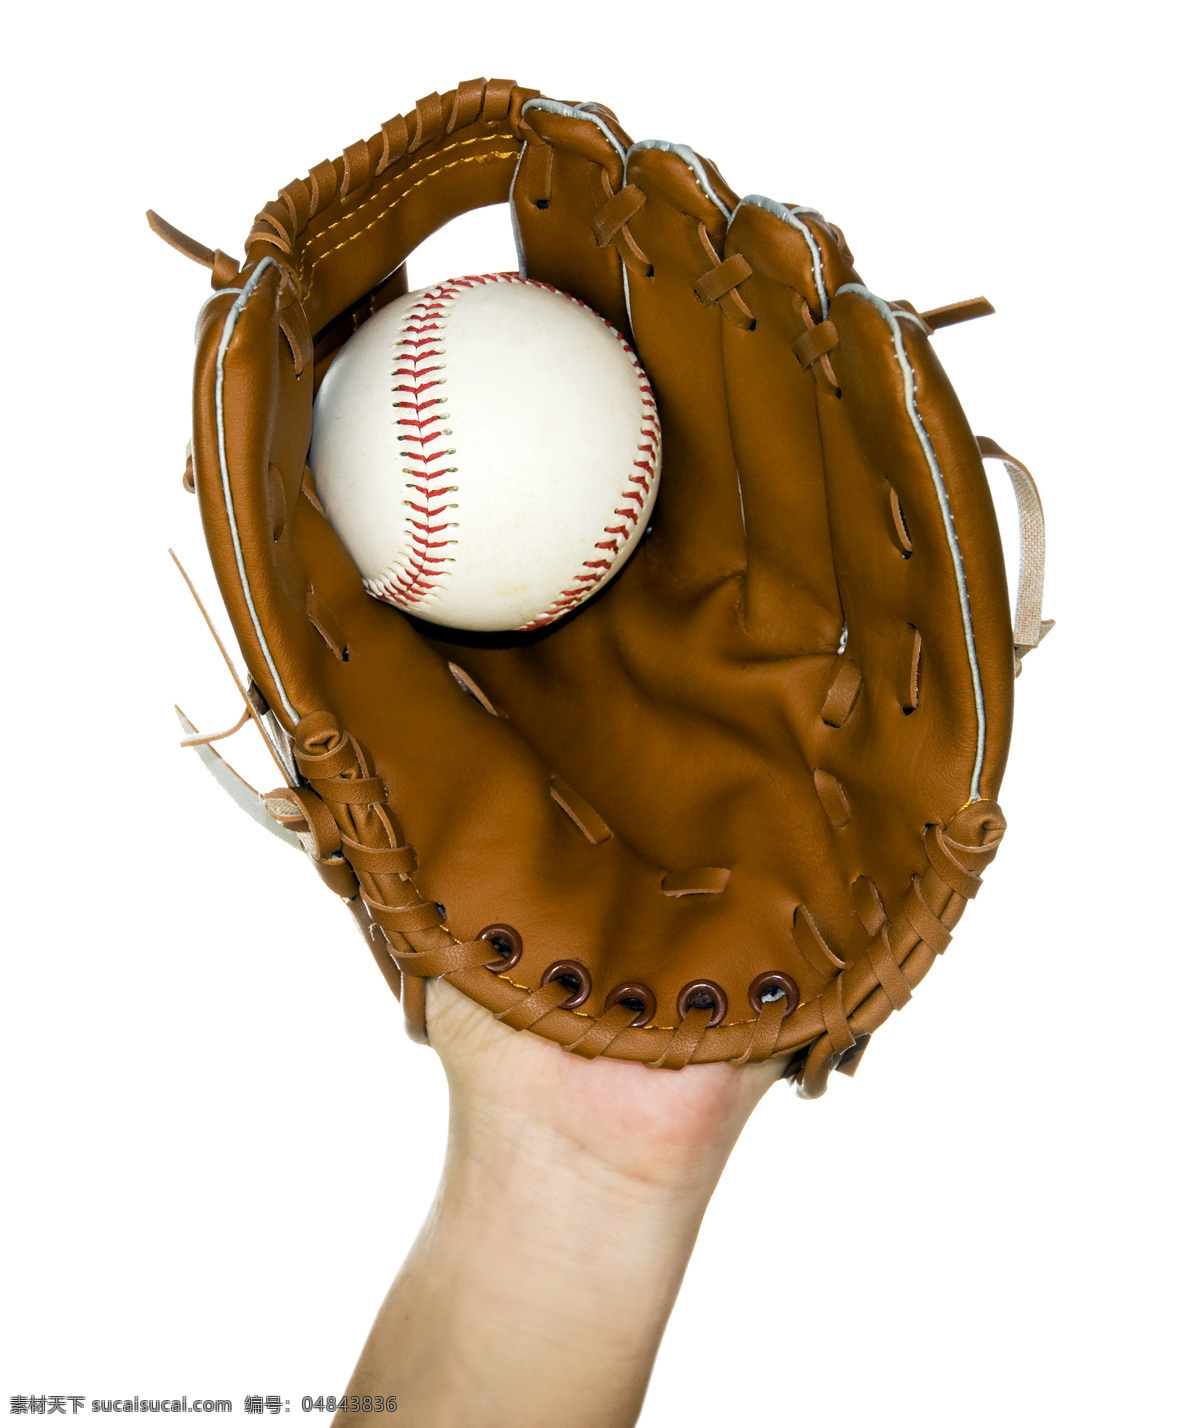 棒球 手套 棒球手套 球类运动 体育运动 体育项目 生活百科